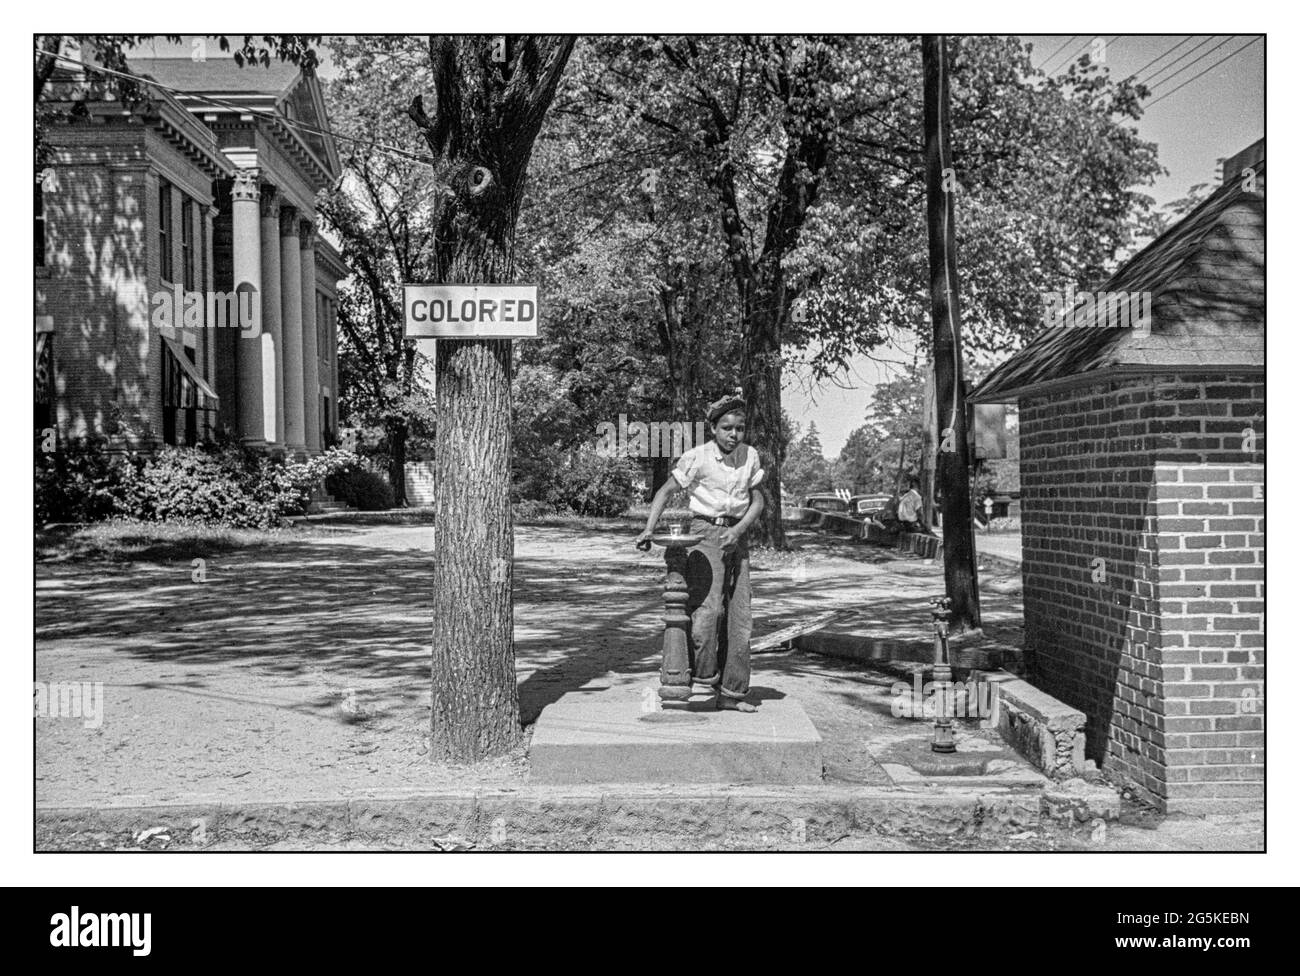 RASSENTRENNUNG in den USA mit einem „farbigen“ Schild über dem Trinkbrunnen auf dem Rasen des Bezirksgerichts, mit einem jungen afroamerikanischen Jungen, der am Brunnen steht. Halifax, North Carolina USA John Vachon Fotograf 1938 . Stockfoto